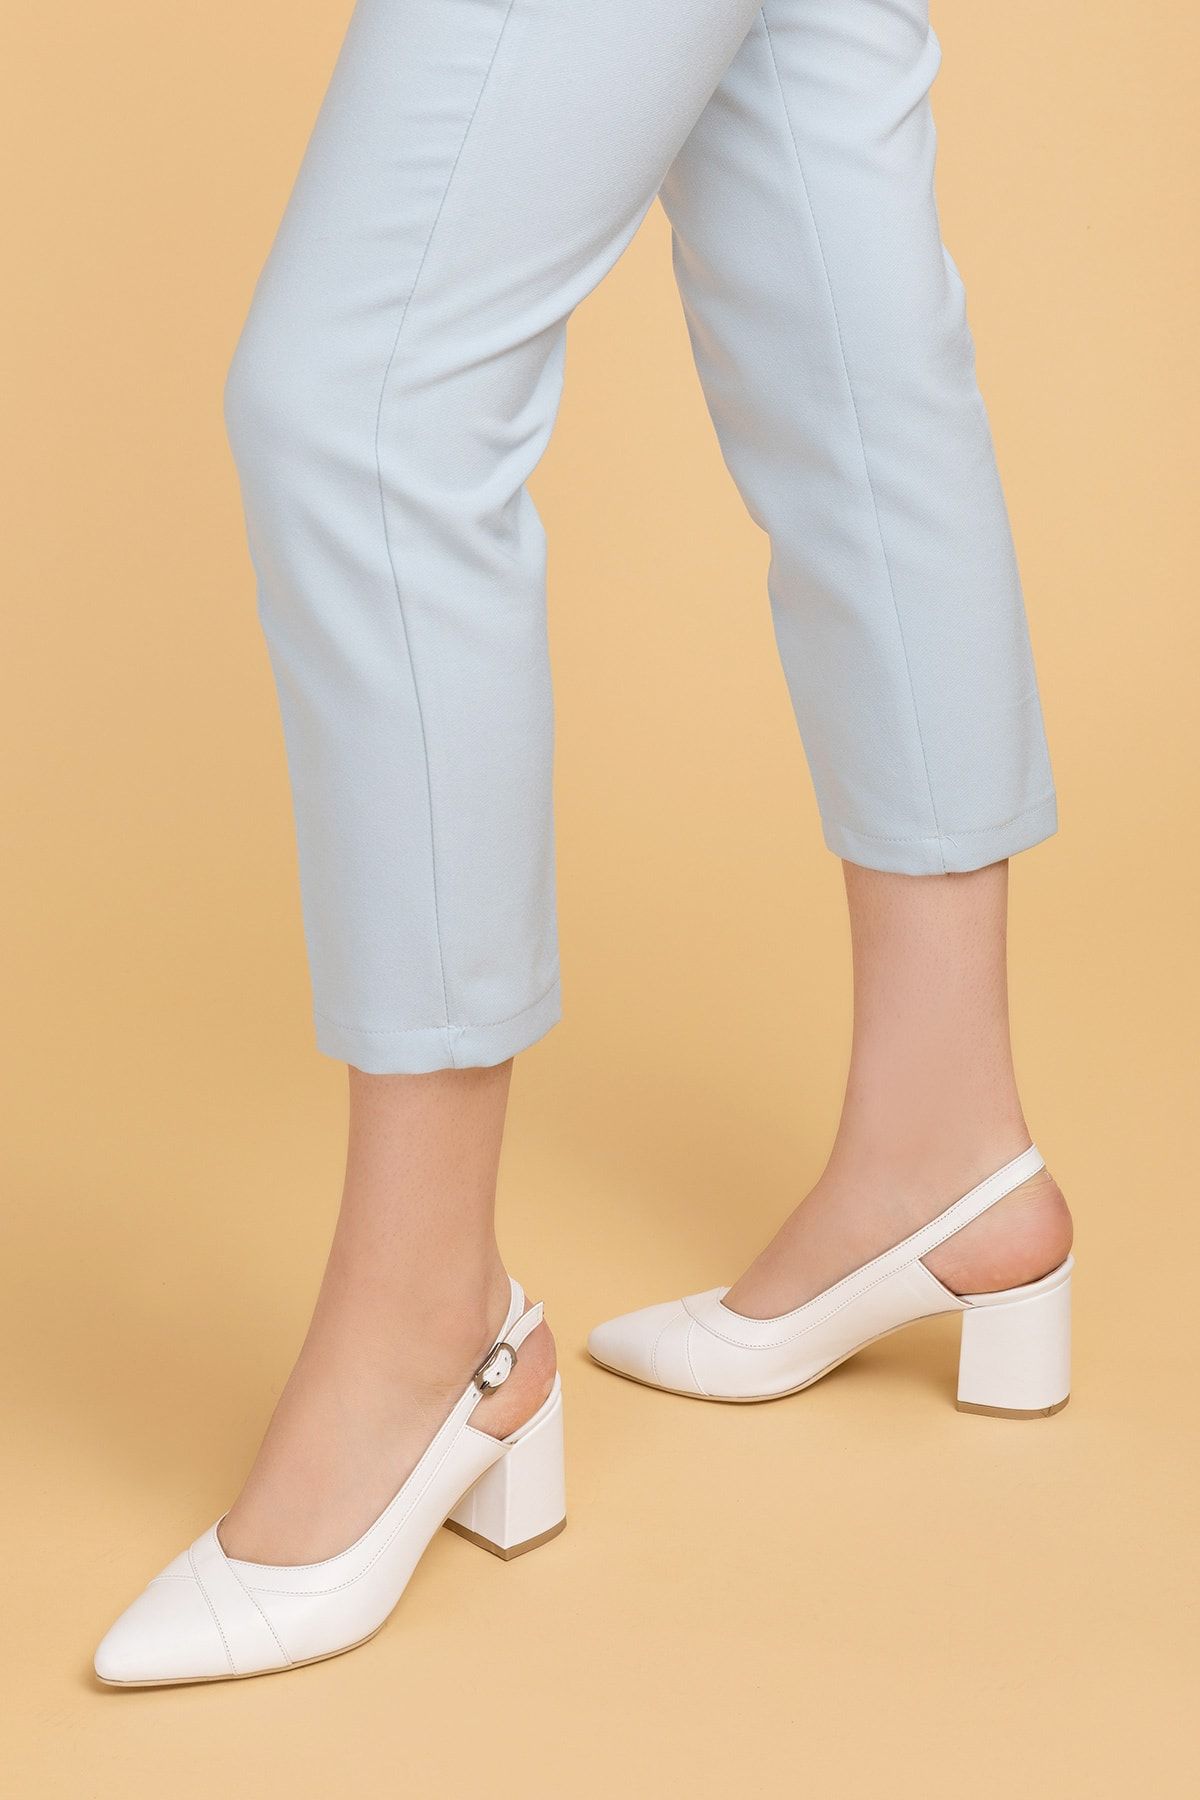 Gondol Kadın Beyaz Hakiki Deri Topuklu Ayakkabı